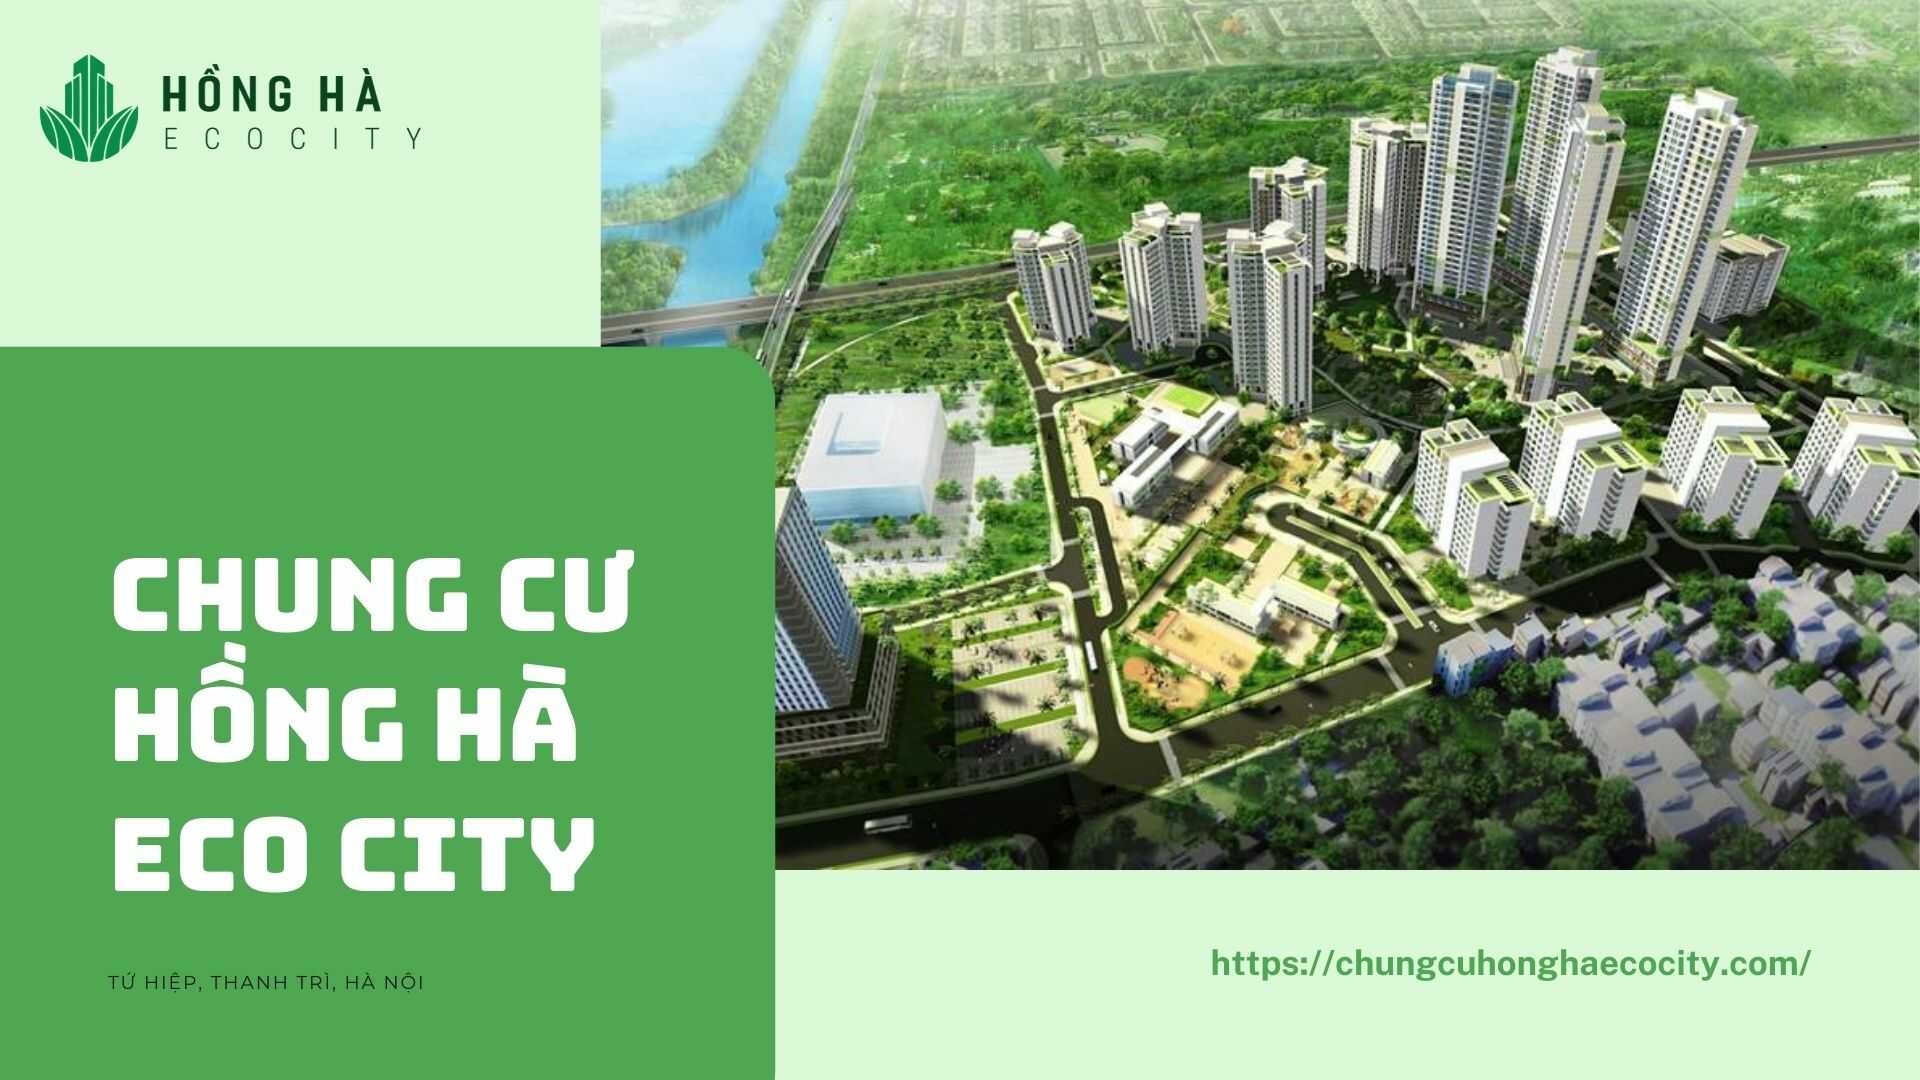 Chung cư Hồng Hà Eco city 1